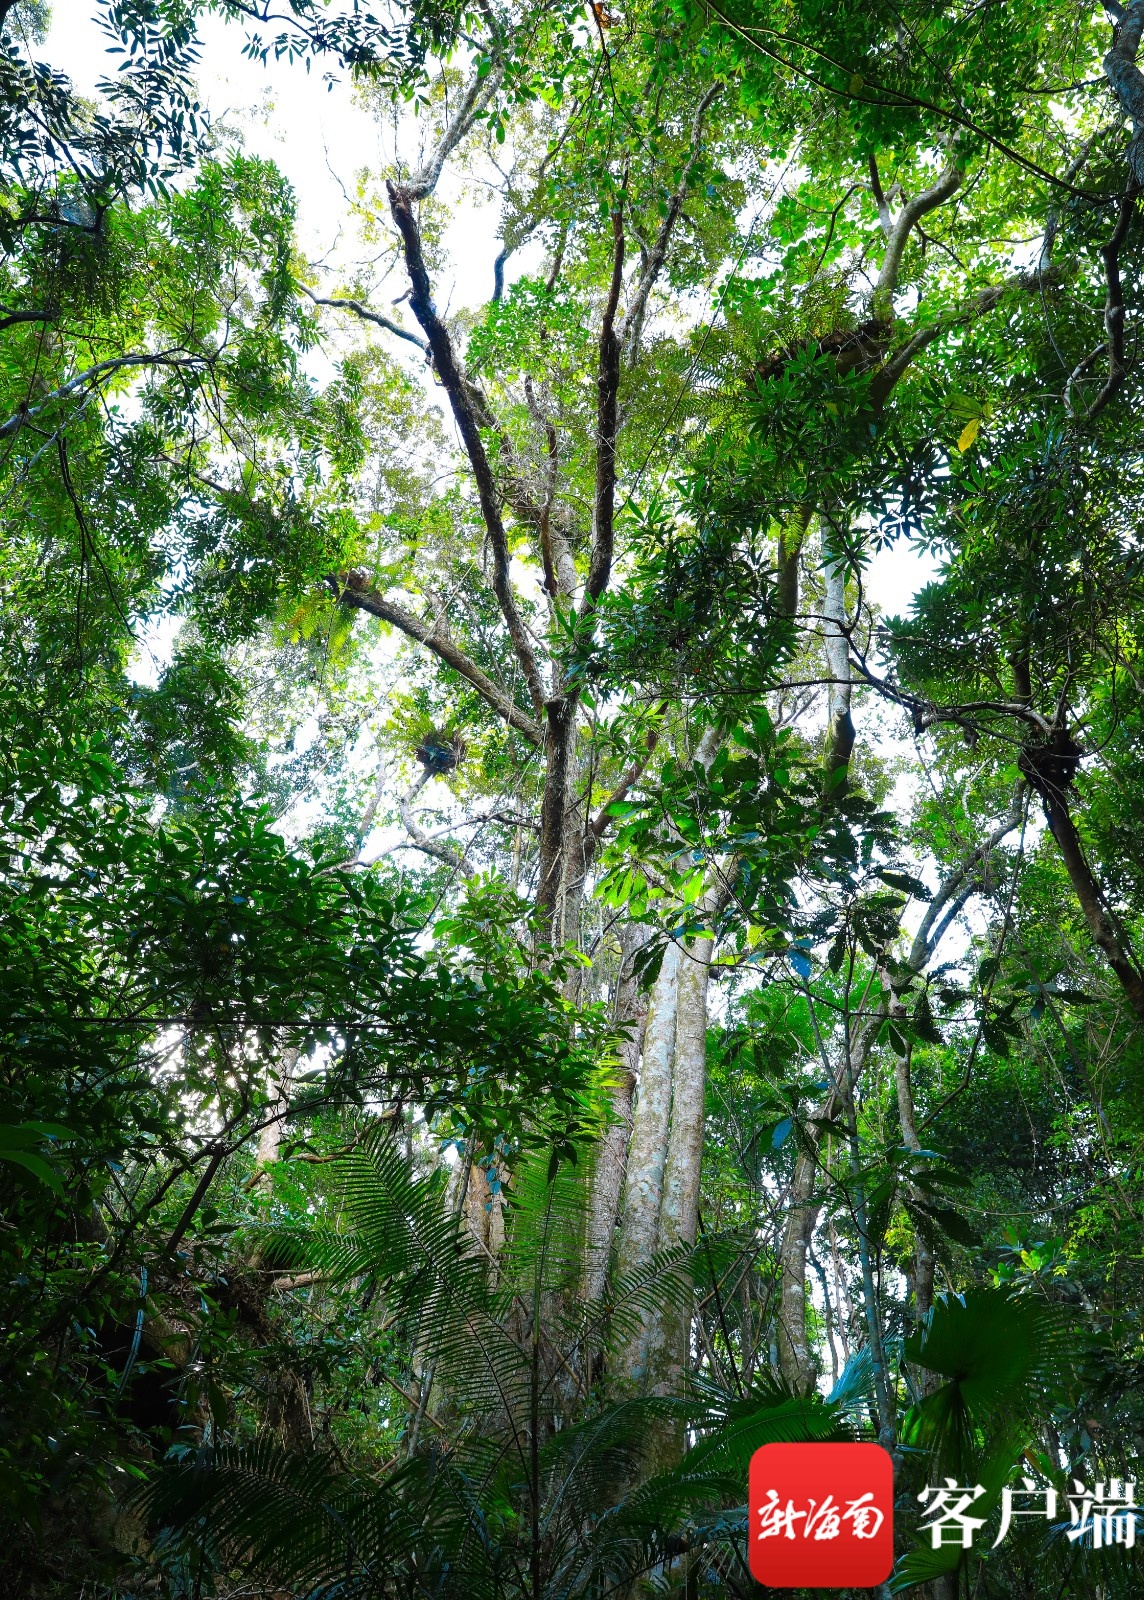 海南森林覆盖率图片